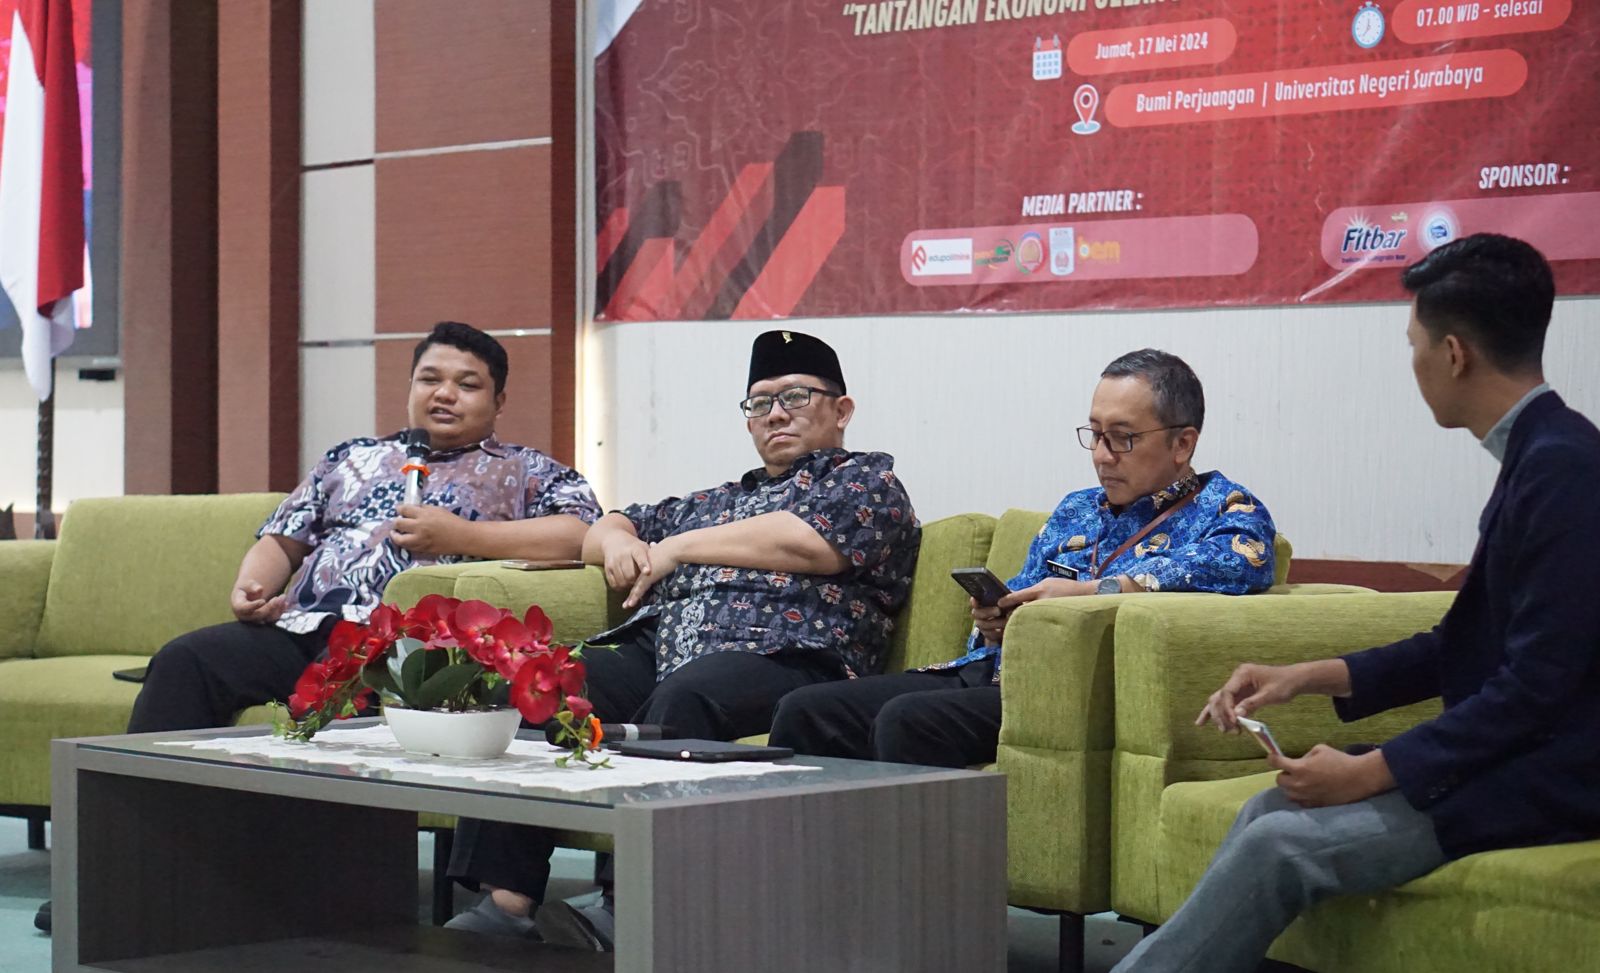 Dialog Kebangsaan di Kampus, Achmad Hidayat: Pertumbuhan Ekonomi Lambat dan Pangan Makin Naik